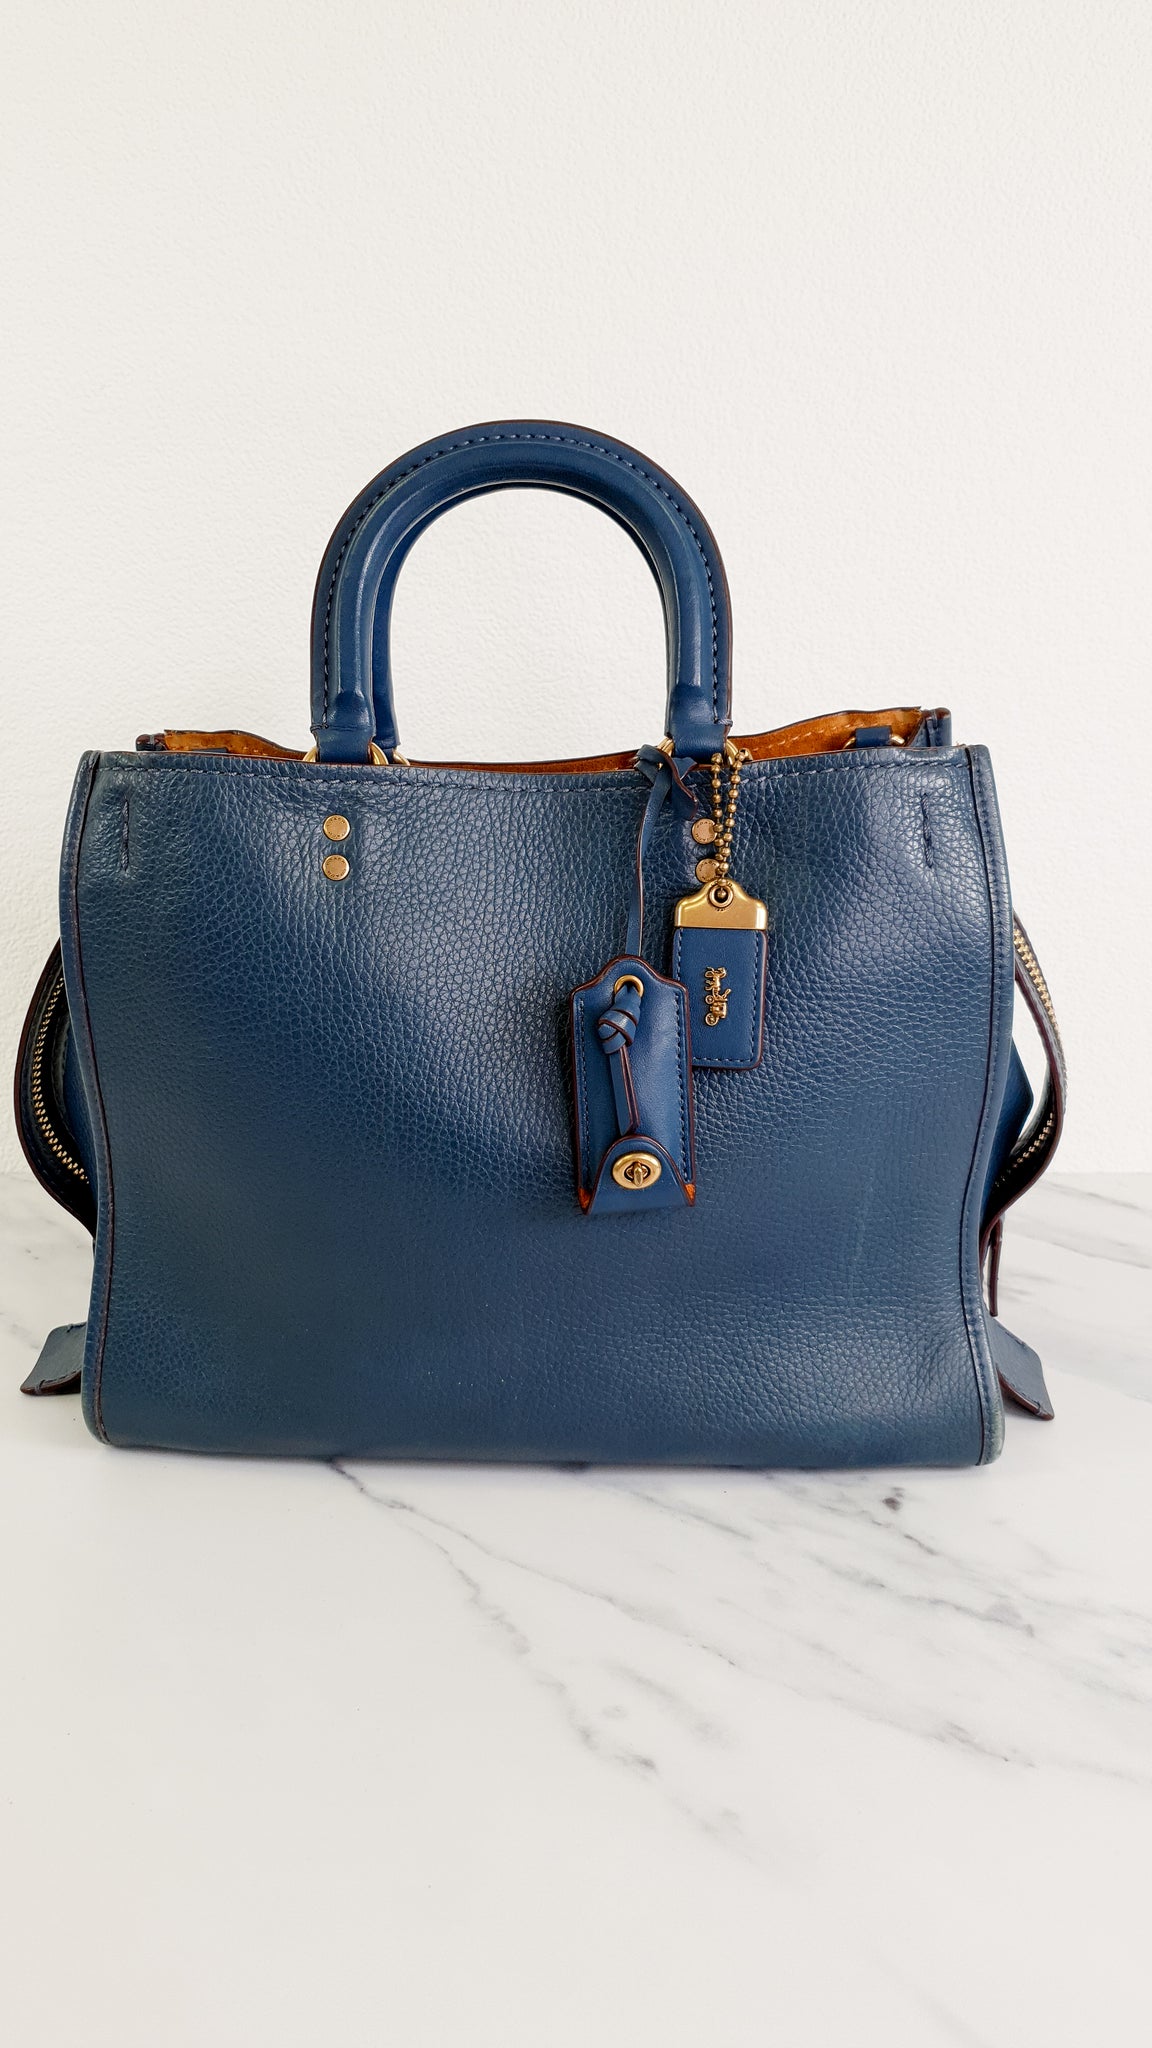 Coach Authenticated Denim Handbag